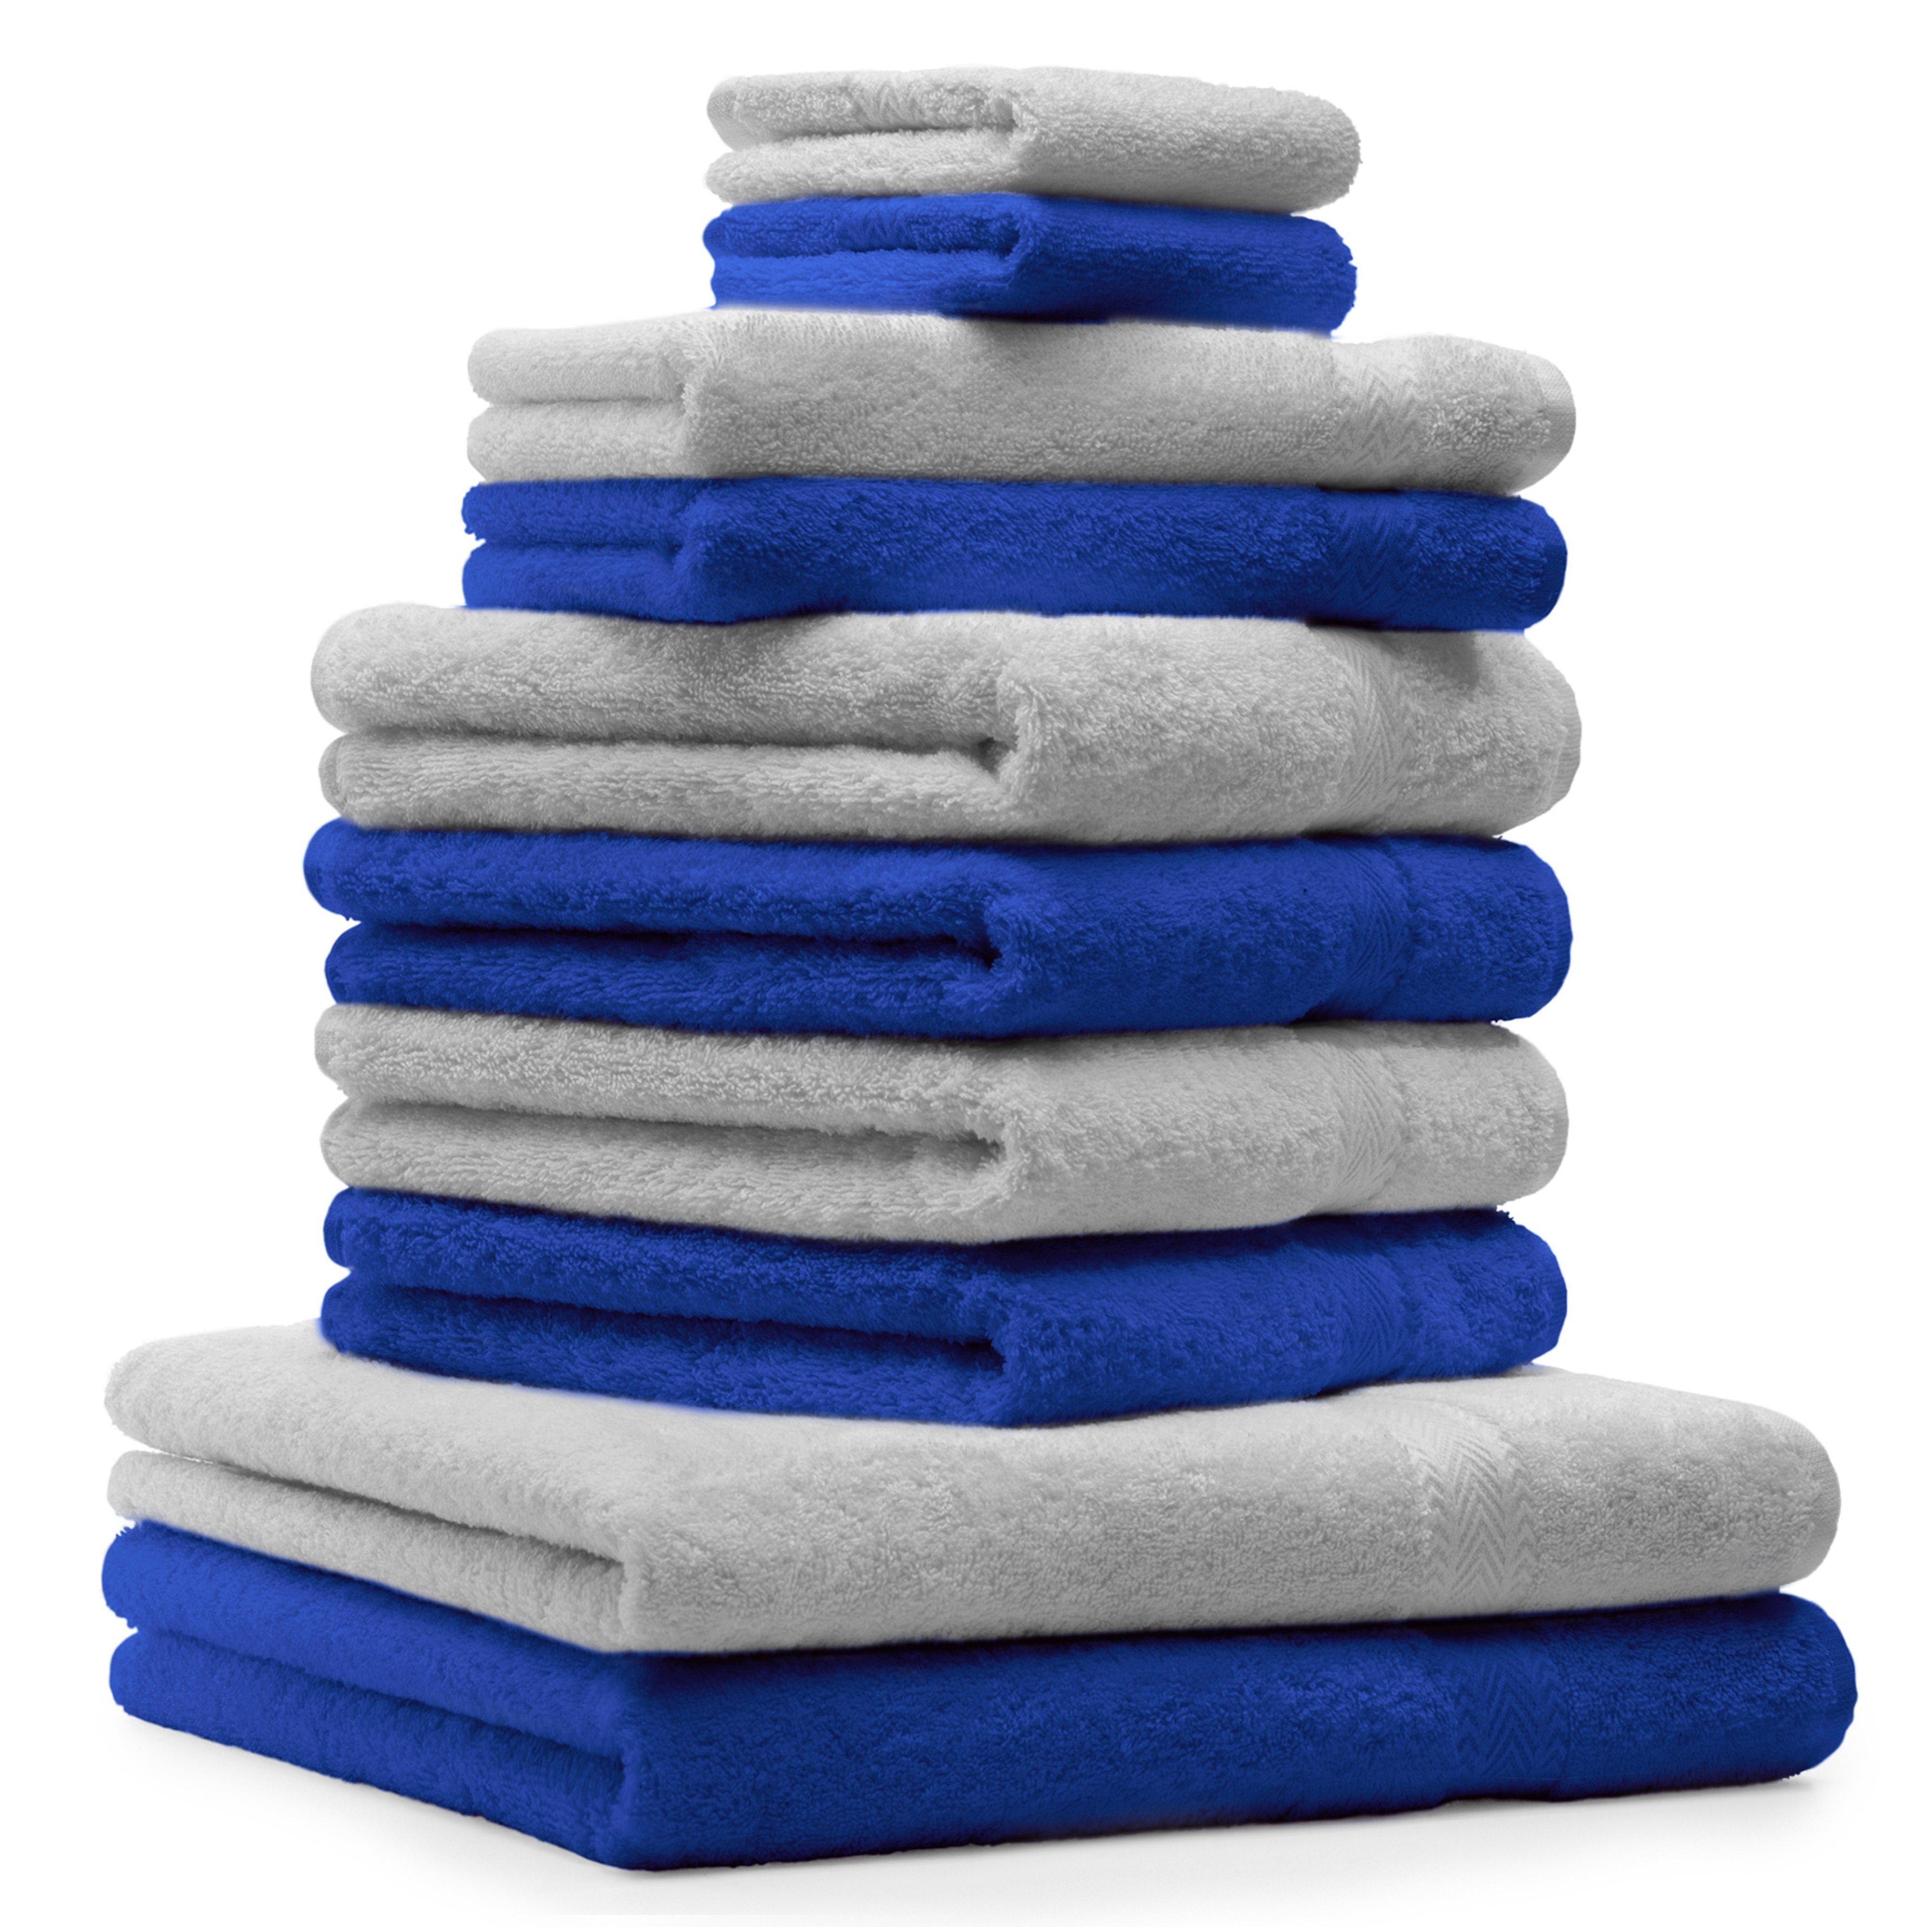 Betz Handtuch Set 10-TLG. Handtuch-Set Classic Farbe royalblau und silbergrau, 100% Baumwolle